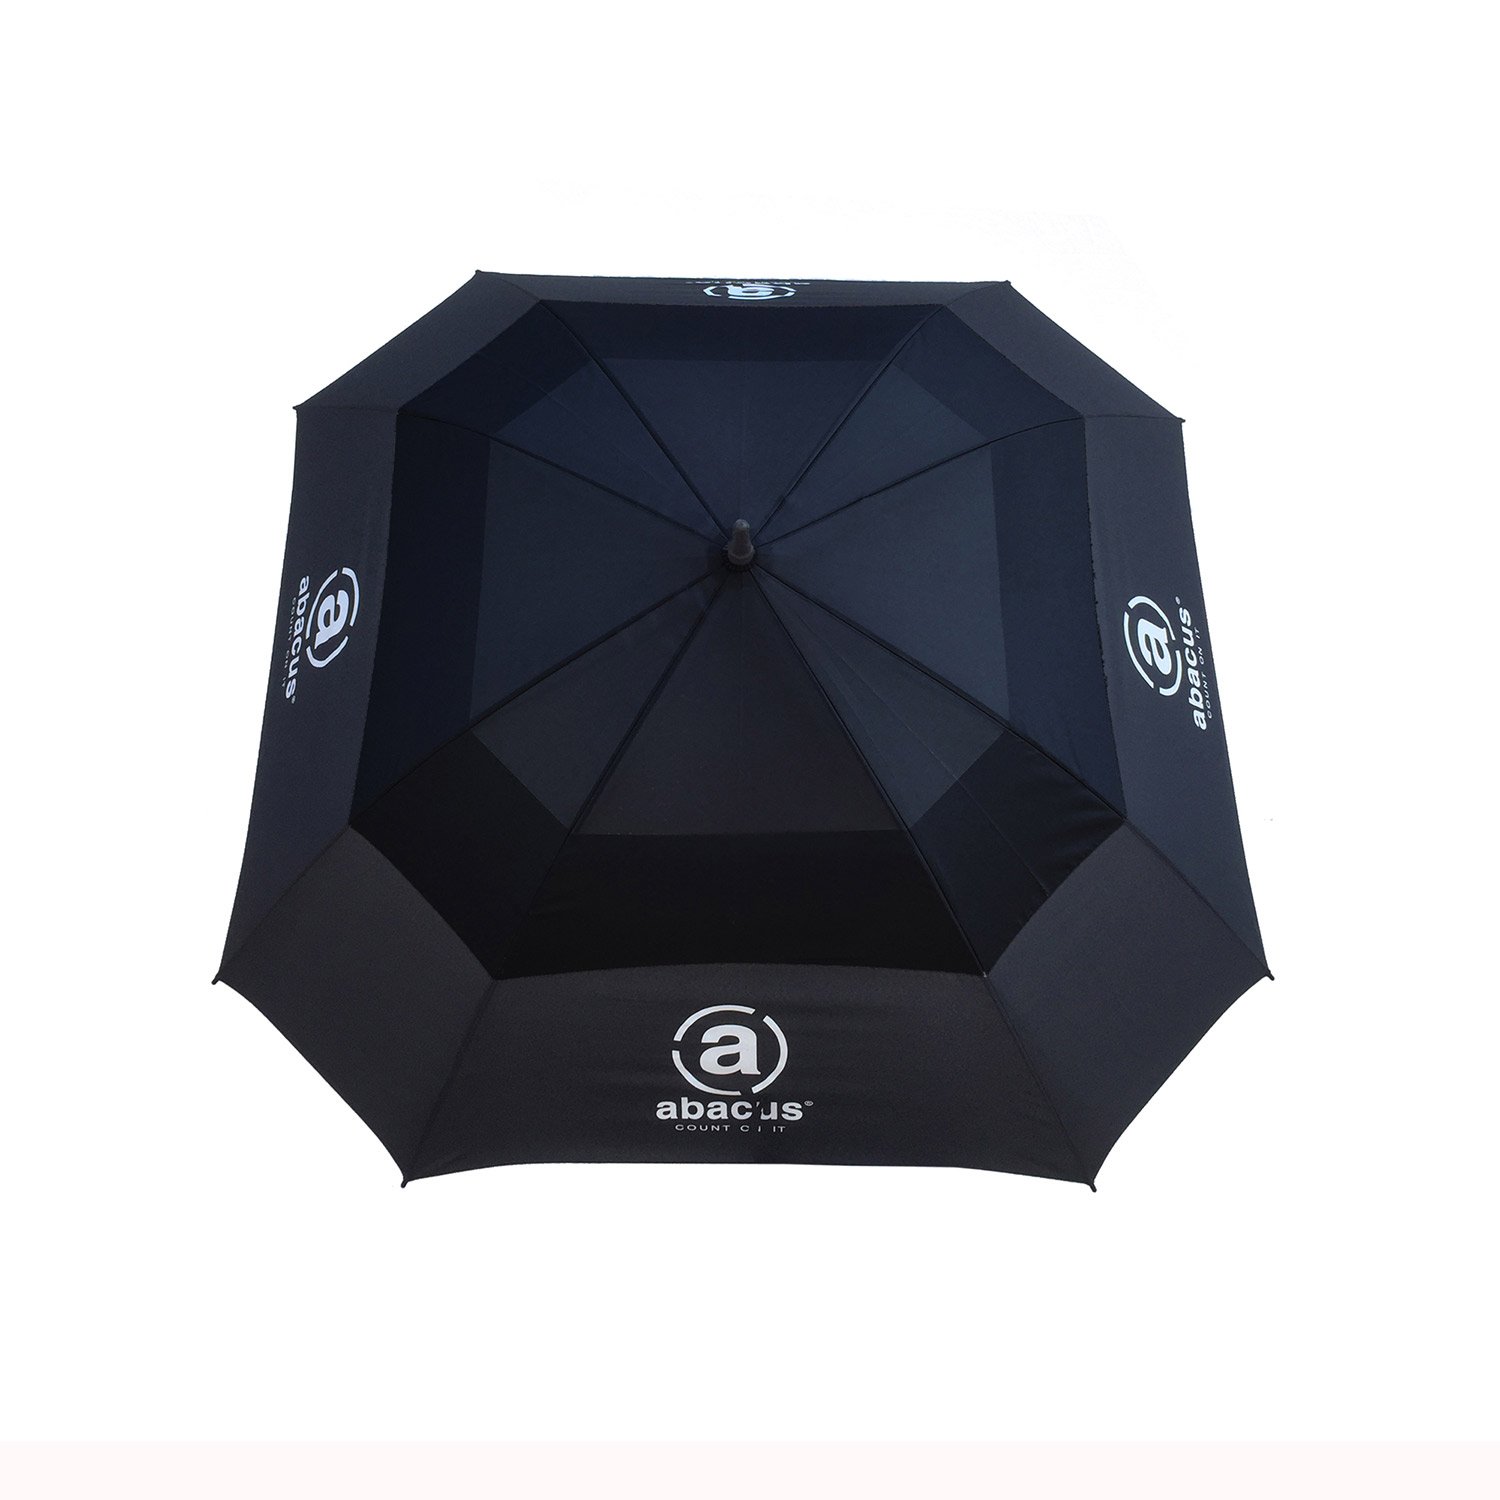 Square Umbrella Black